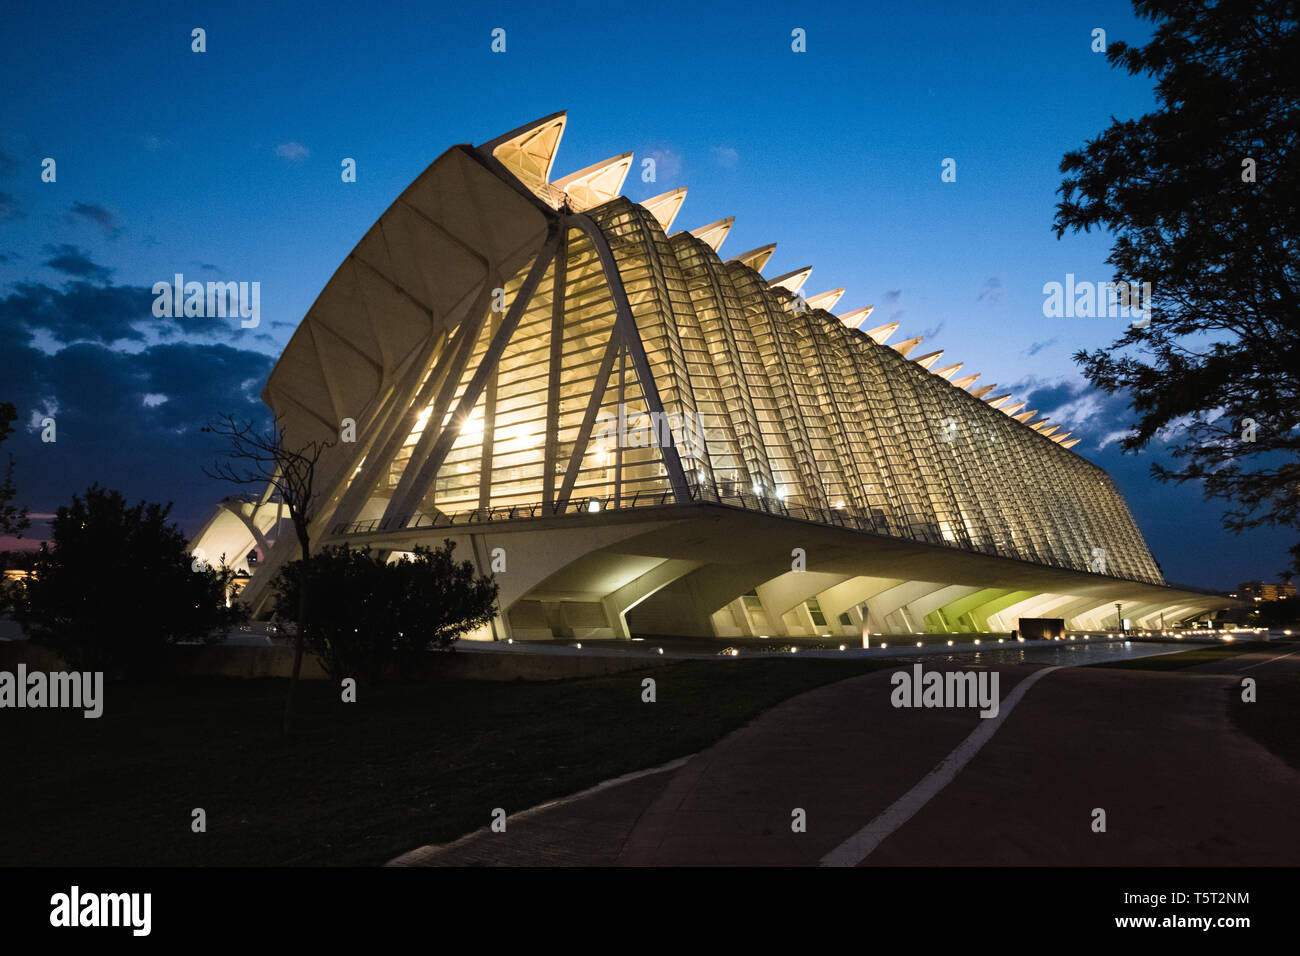 Valence, Espagne. Le 3 avril 2019. Une vue de la nuit du Musée des Sciences de Valence Banque D'Images